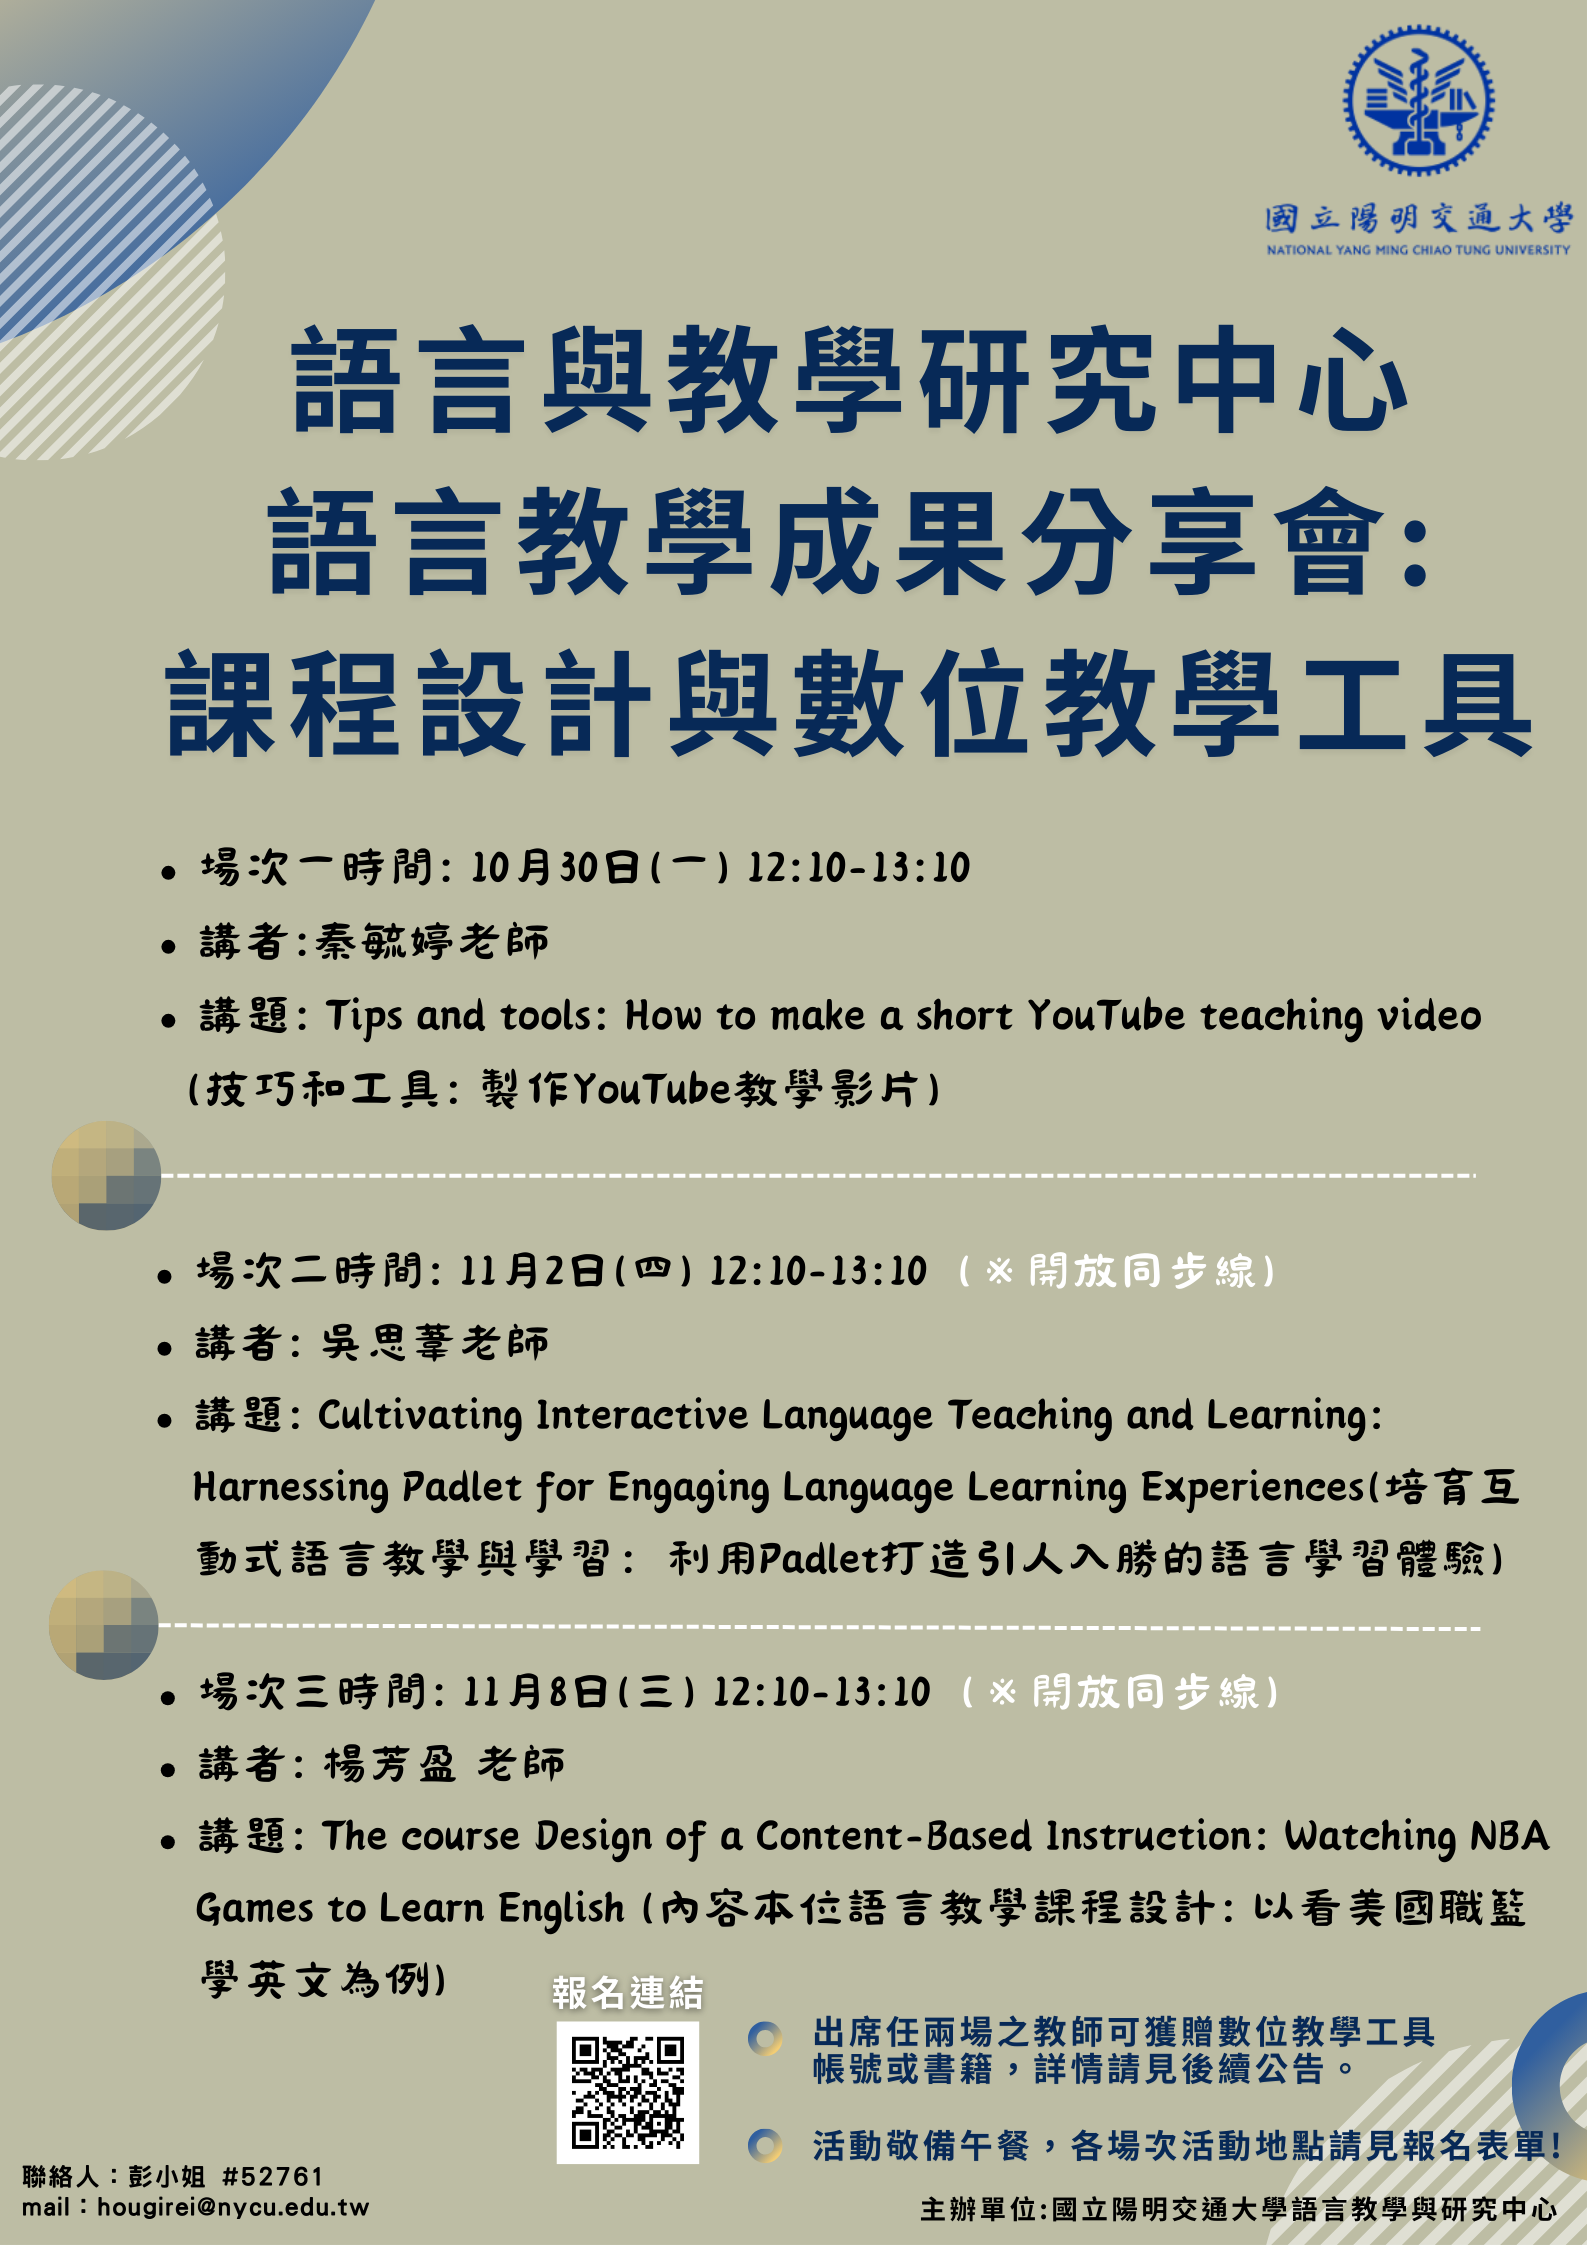 _112-1語言與教學研究中心語言教學成果分享會_課程設計與數位教學工具_海報.png